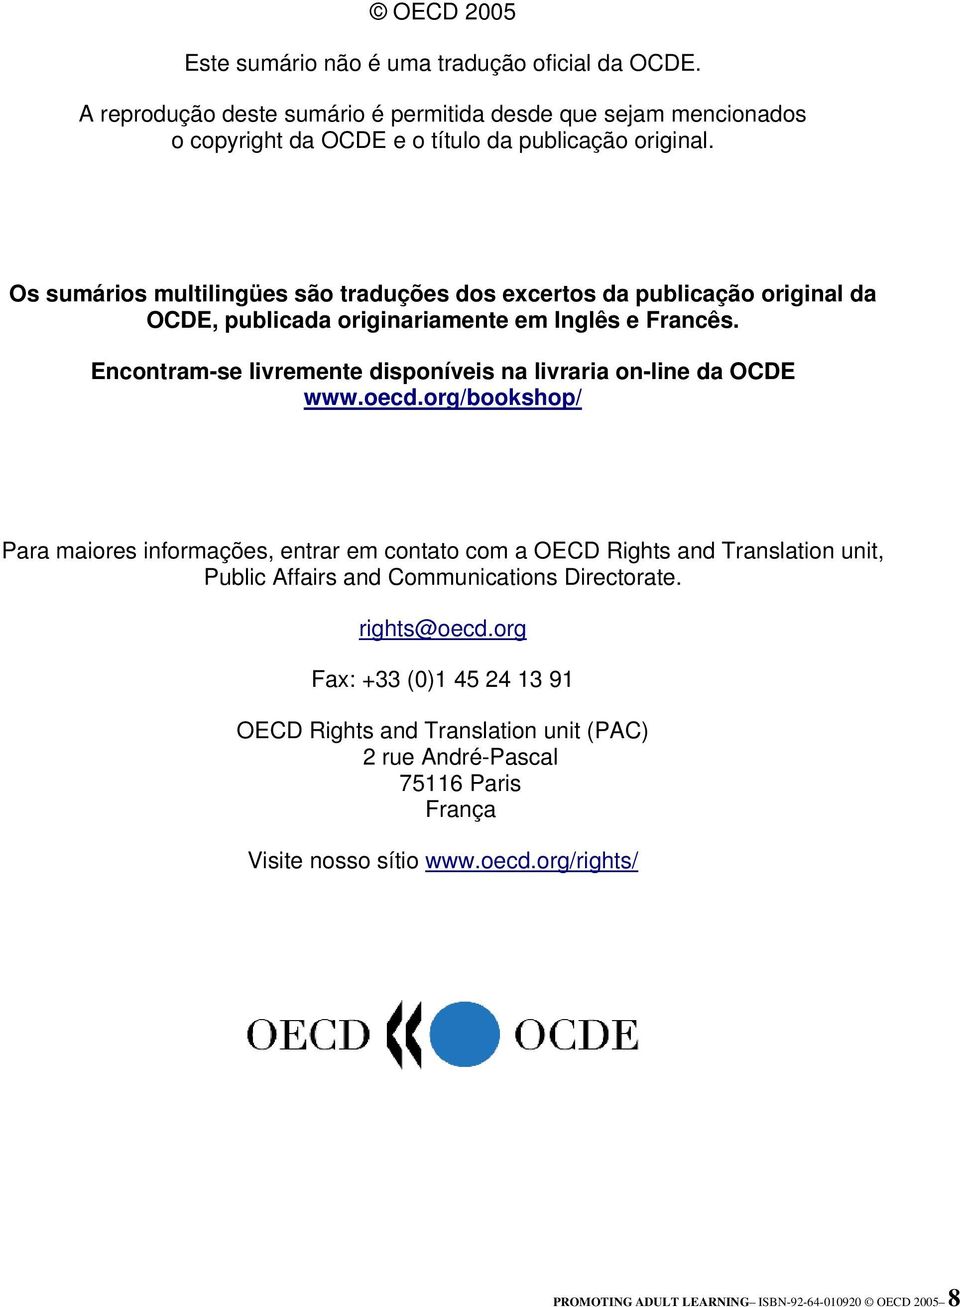 Encontram-se livremente disponíveis na livraria on-line da OCDE www.oecd.